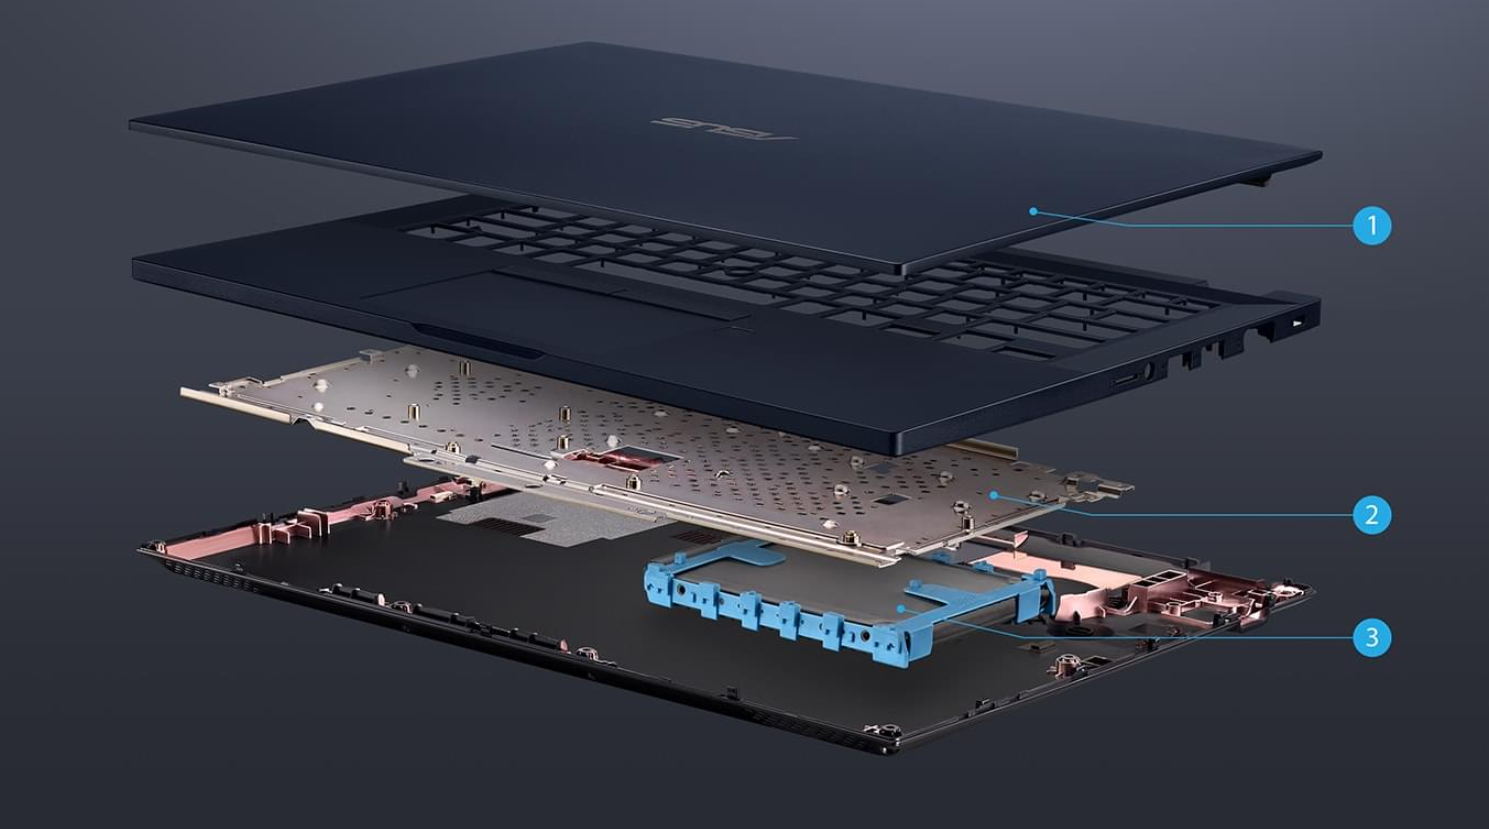 Laptop ASUS ExpertBook P2 P2451FA-EB0117R schematyczna wizualizacja budowy laptopa